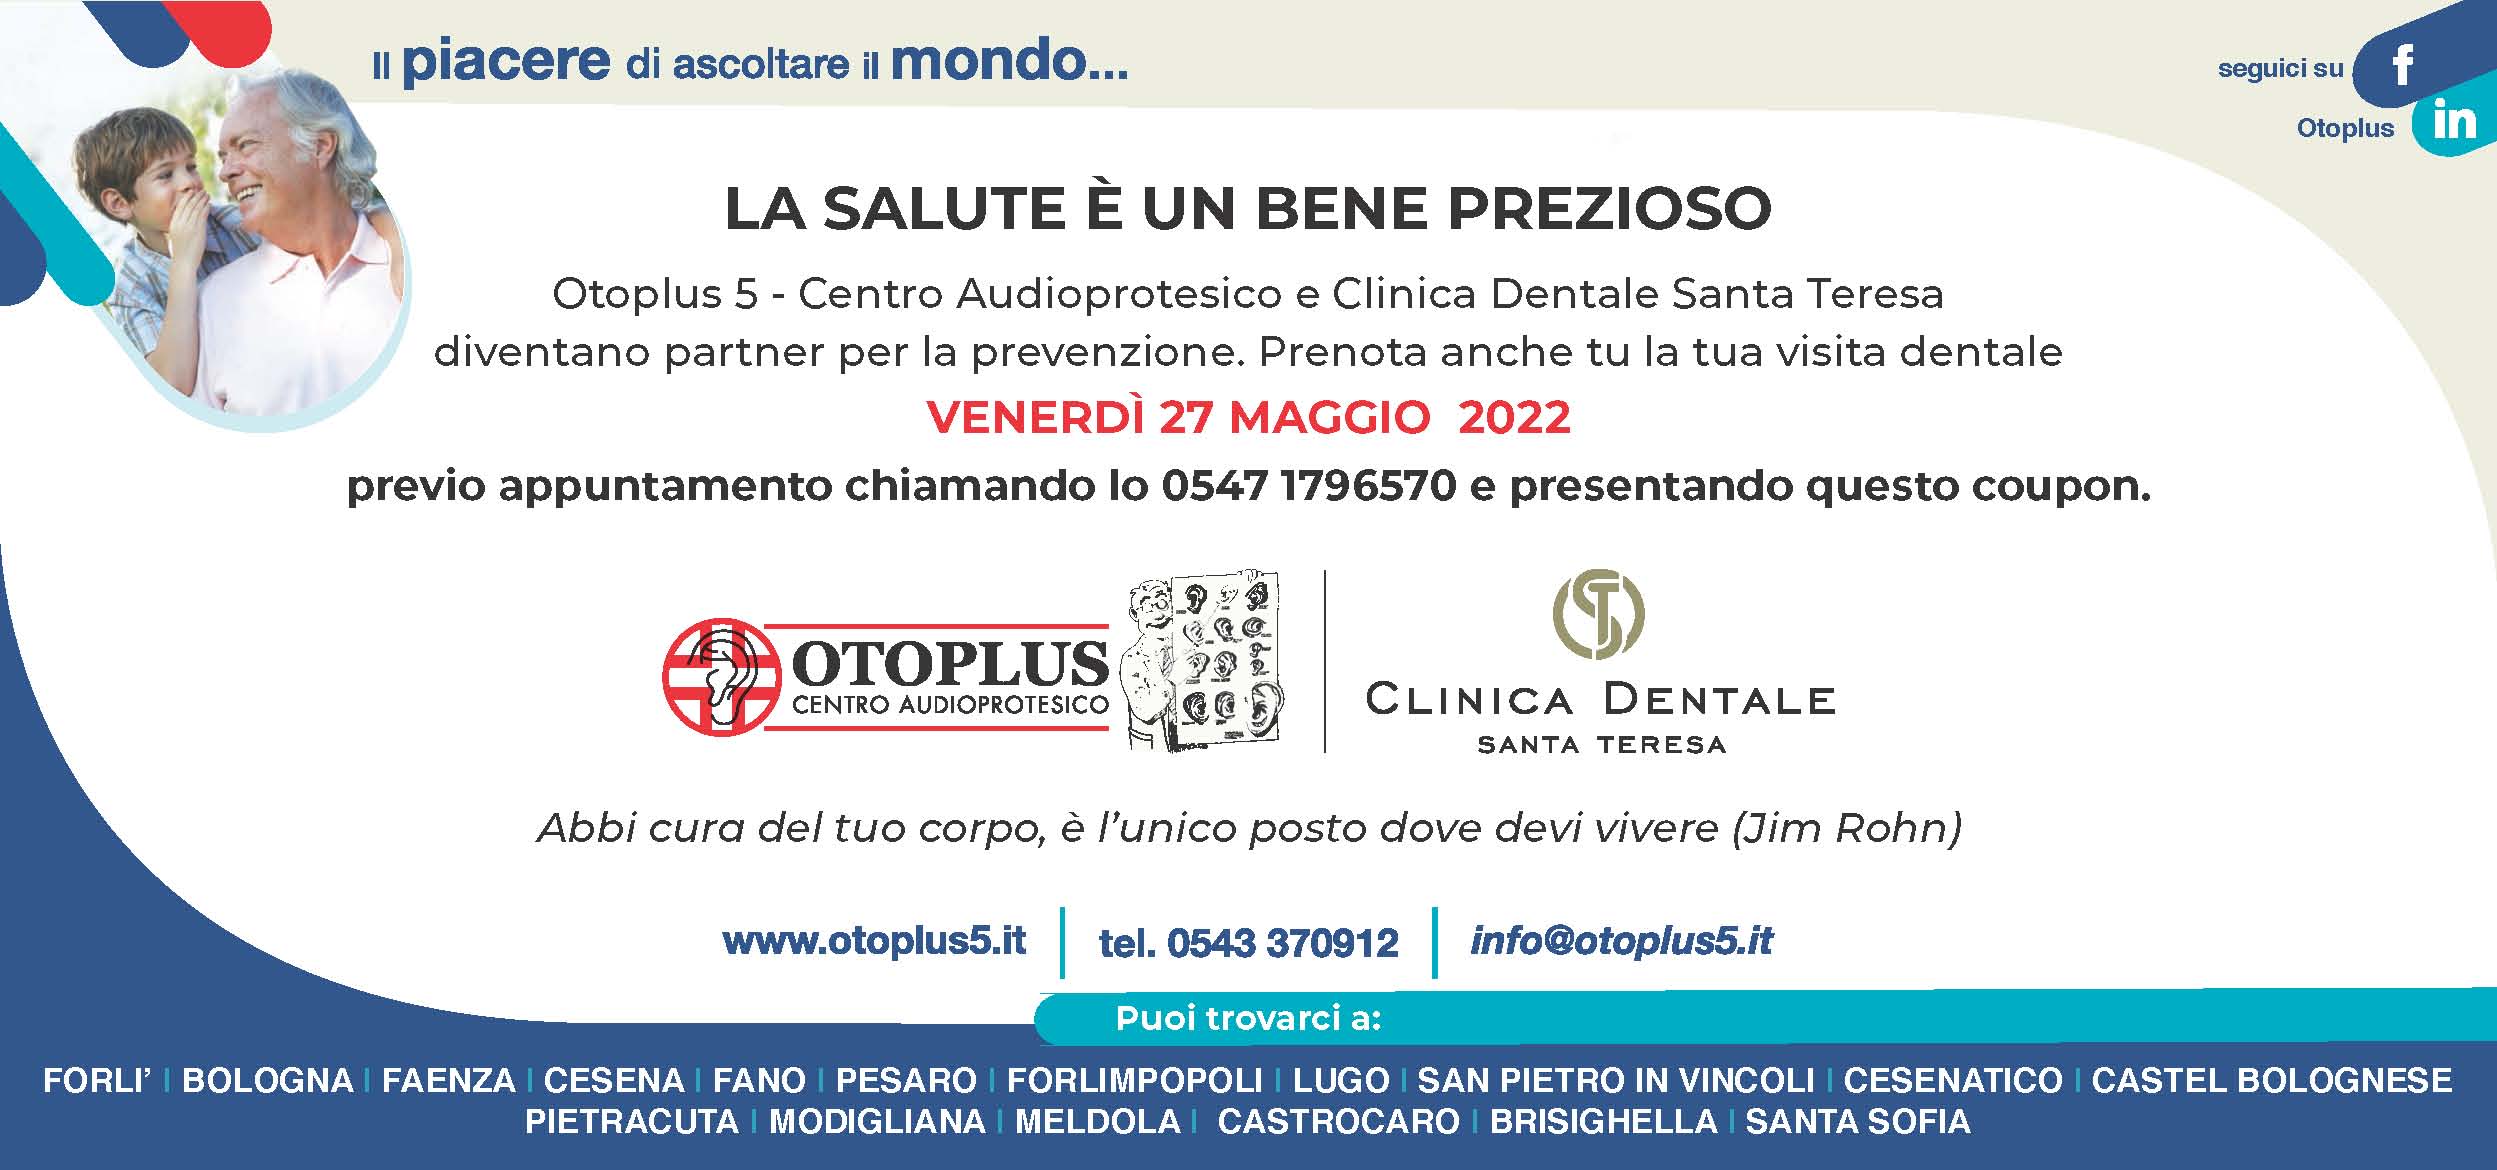 Venerdì 27 maggio: Otoplus e Clinica Dentale Santa Teresa partner per la prevenzione